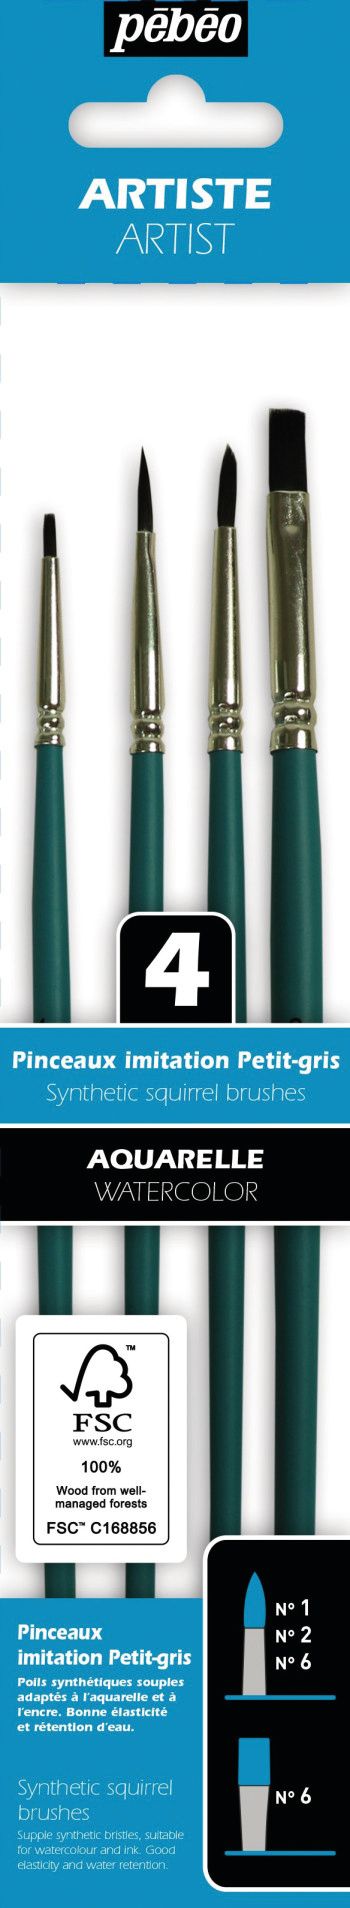 Set de 8 Pinceaux Aquarelle - Imitation Petit-Gris - Pébéo